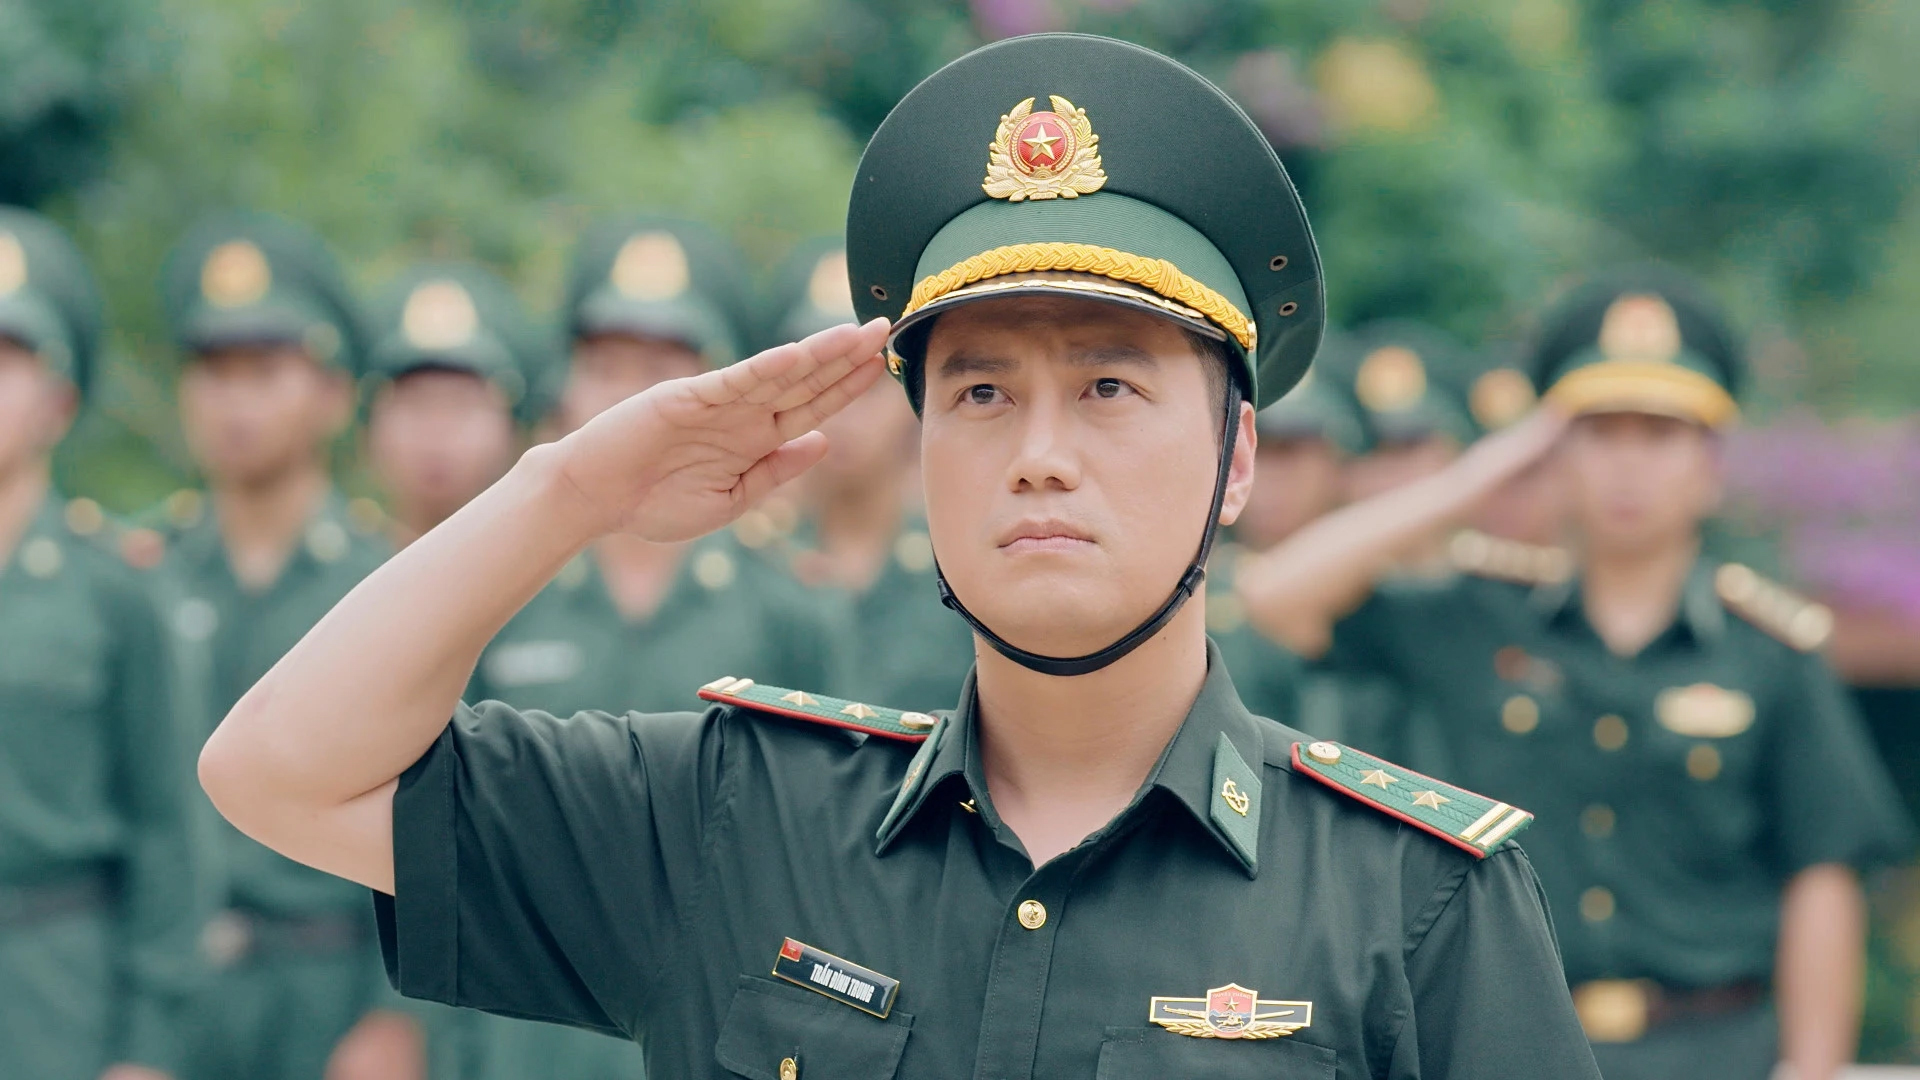 Bộ phim 'Cuộc chiến không giới tuyến' do Việt Anh đóng chính nhận được nhiều lời khen ngợi